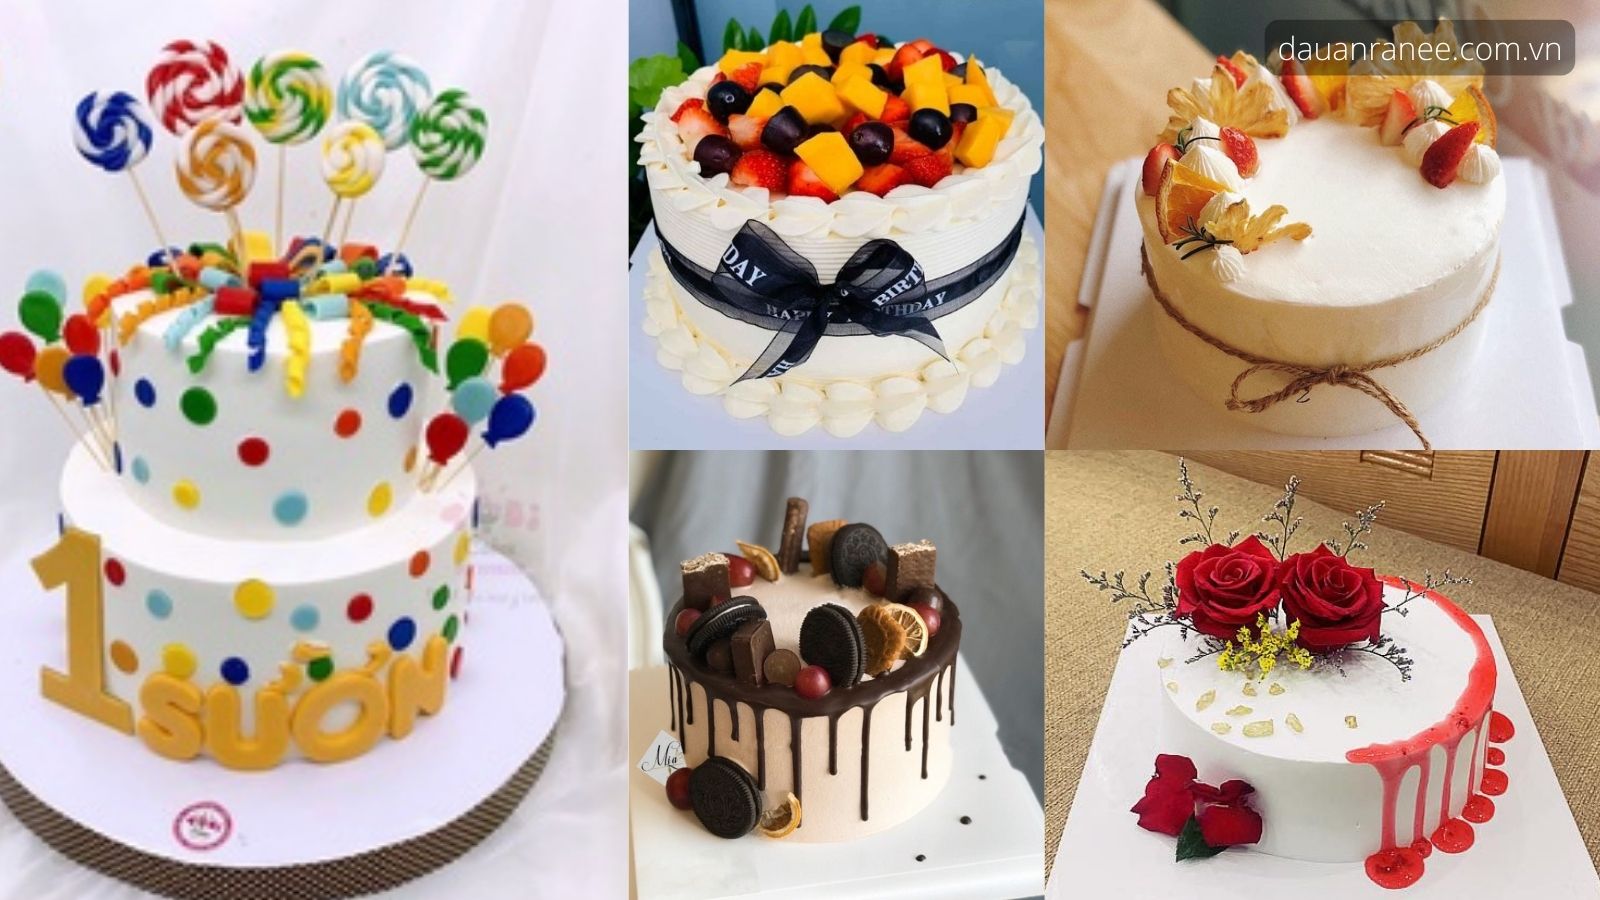 Mẫu bánh sinh nhật cho người yêu đẹp, lạ và cách làm đơn giản